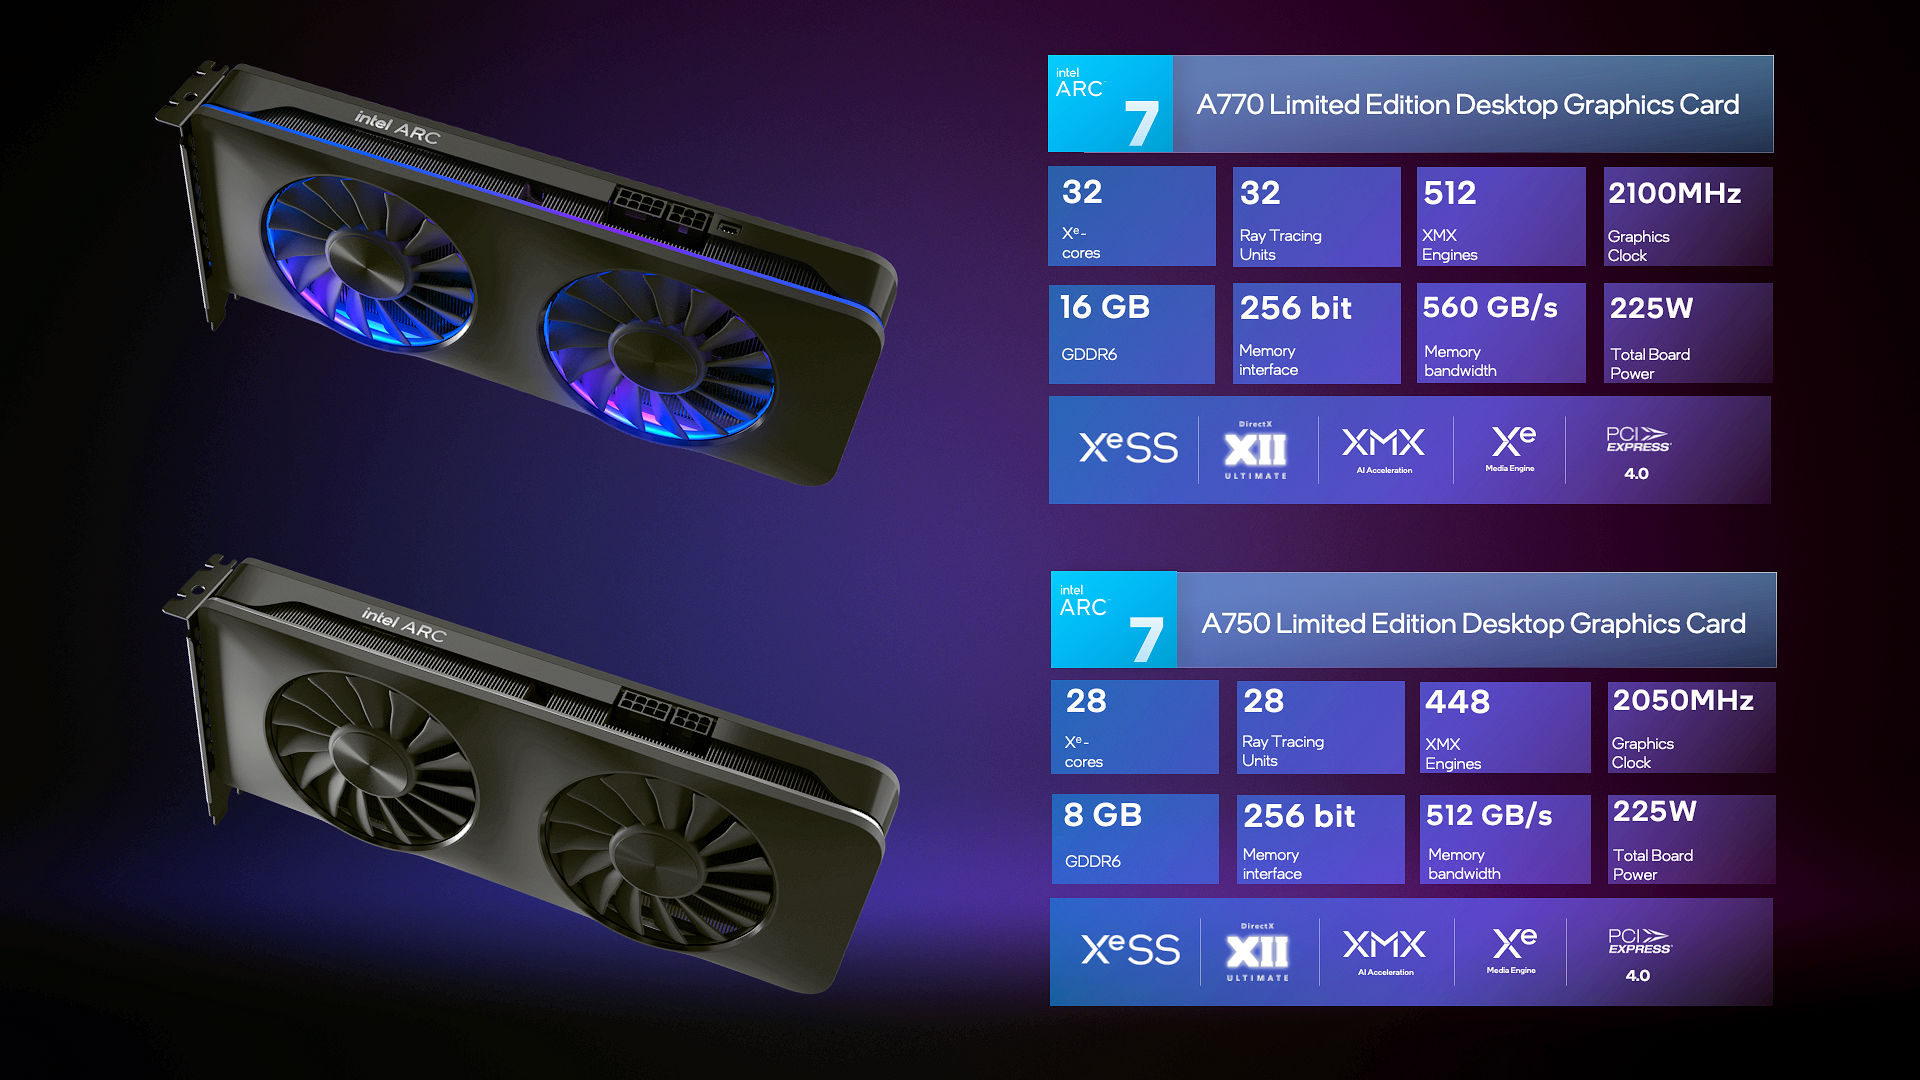 Intel раскрыла характеристики настольных видеокарт Arc A770, A750 и A580: до 32 ядер Xe, до 16 ГБ памяти и энергопотребление до 225 Вт